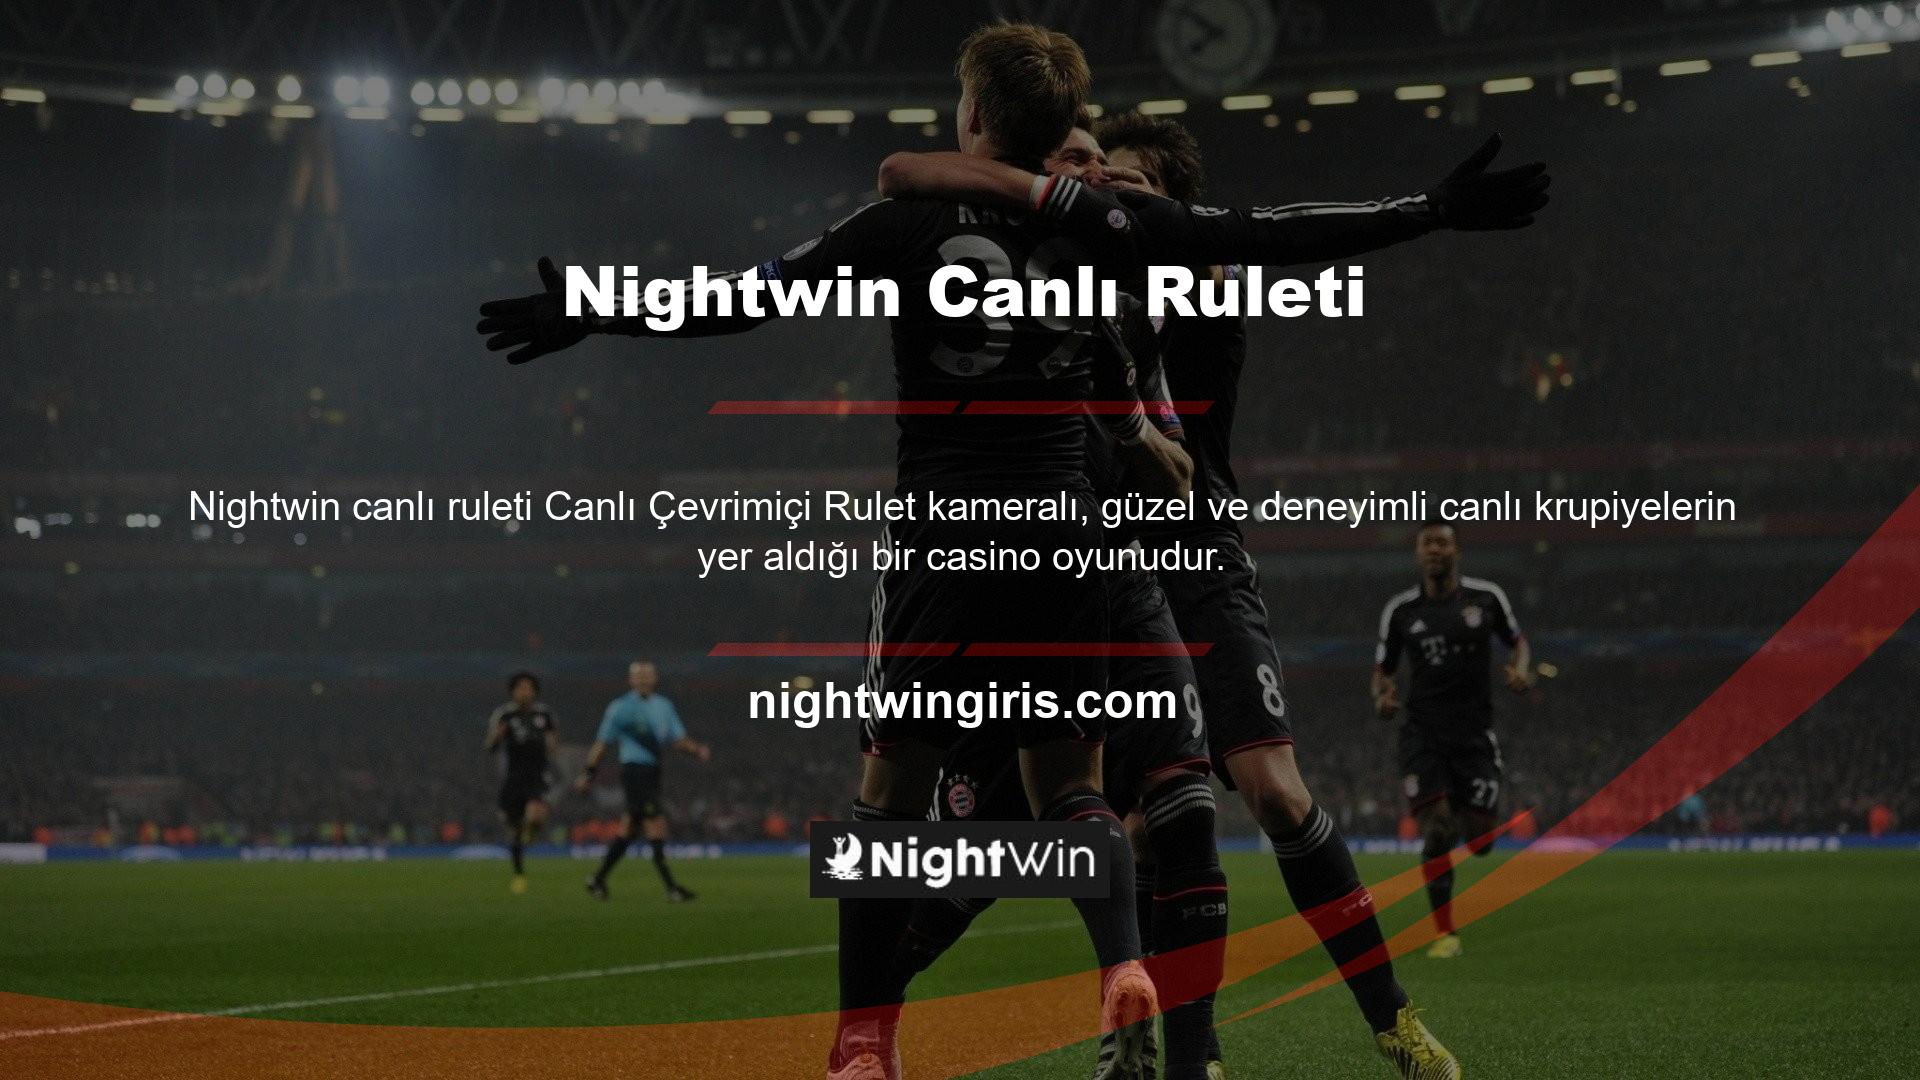 Nightwin canlı ruleti size her zaman gerçek bir casinoda rulet oynama hissi verir